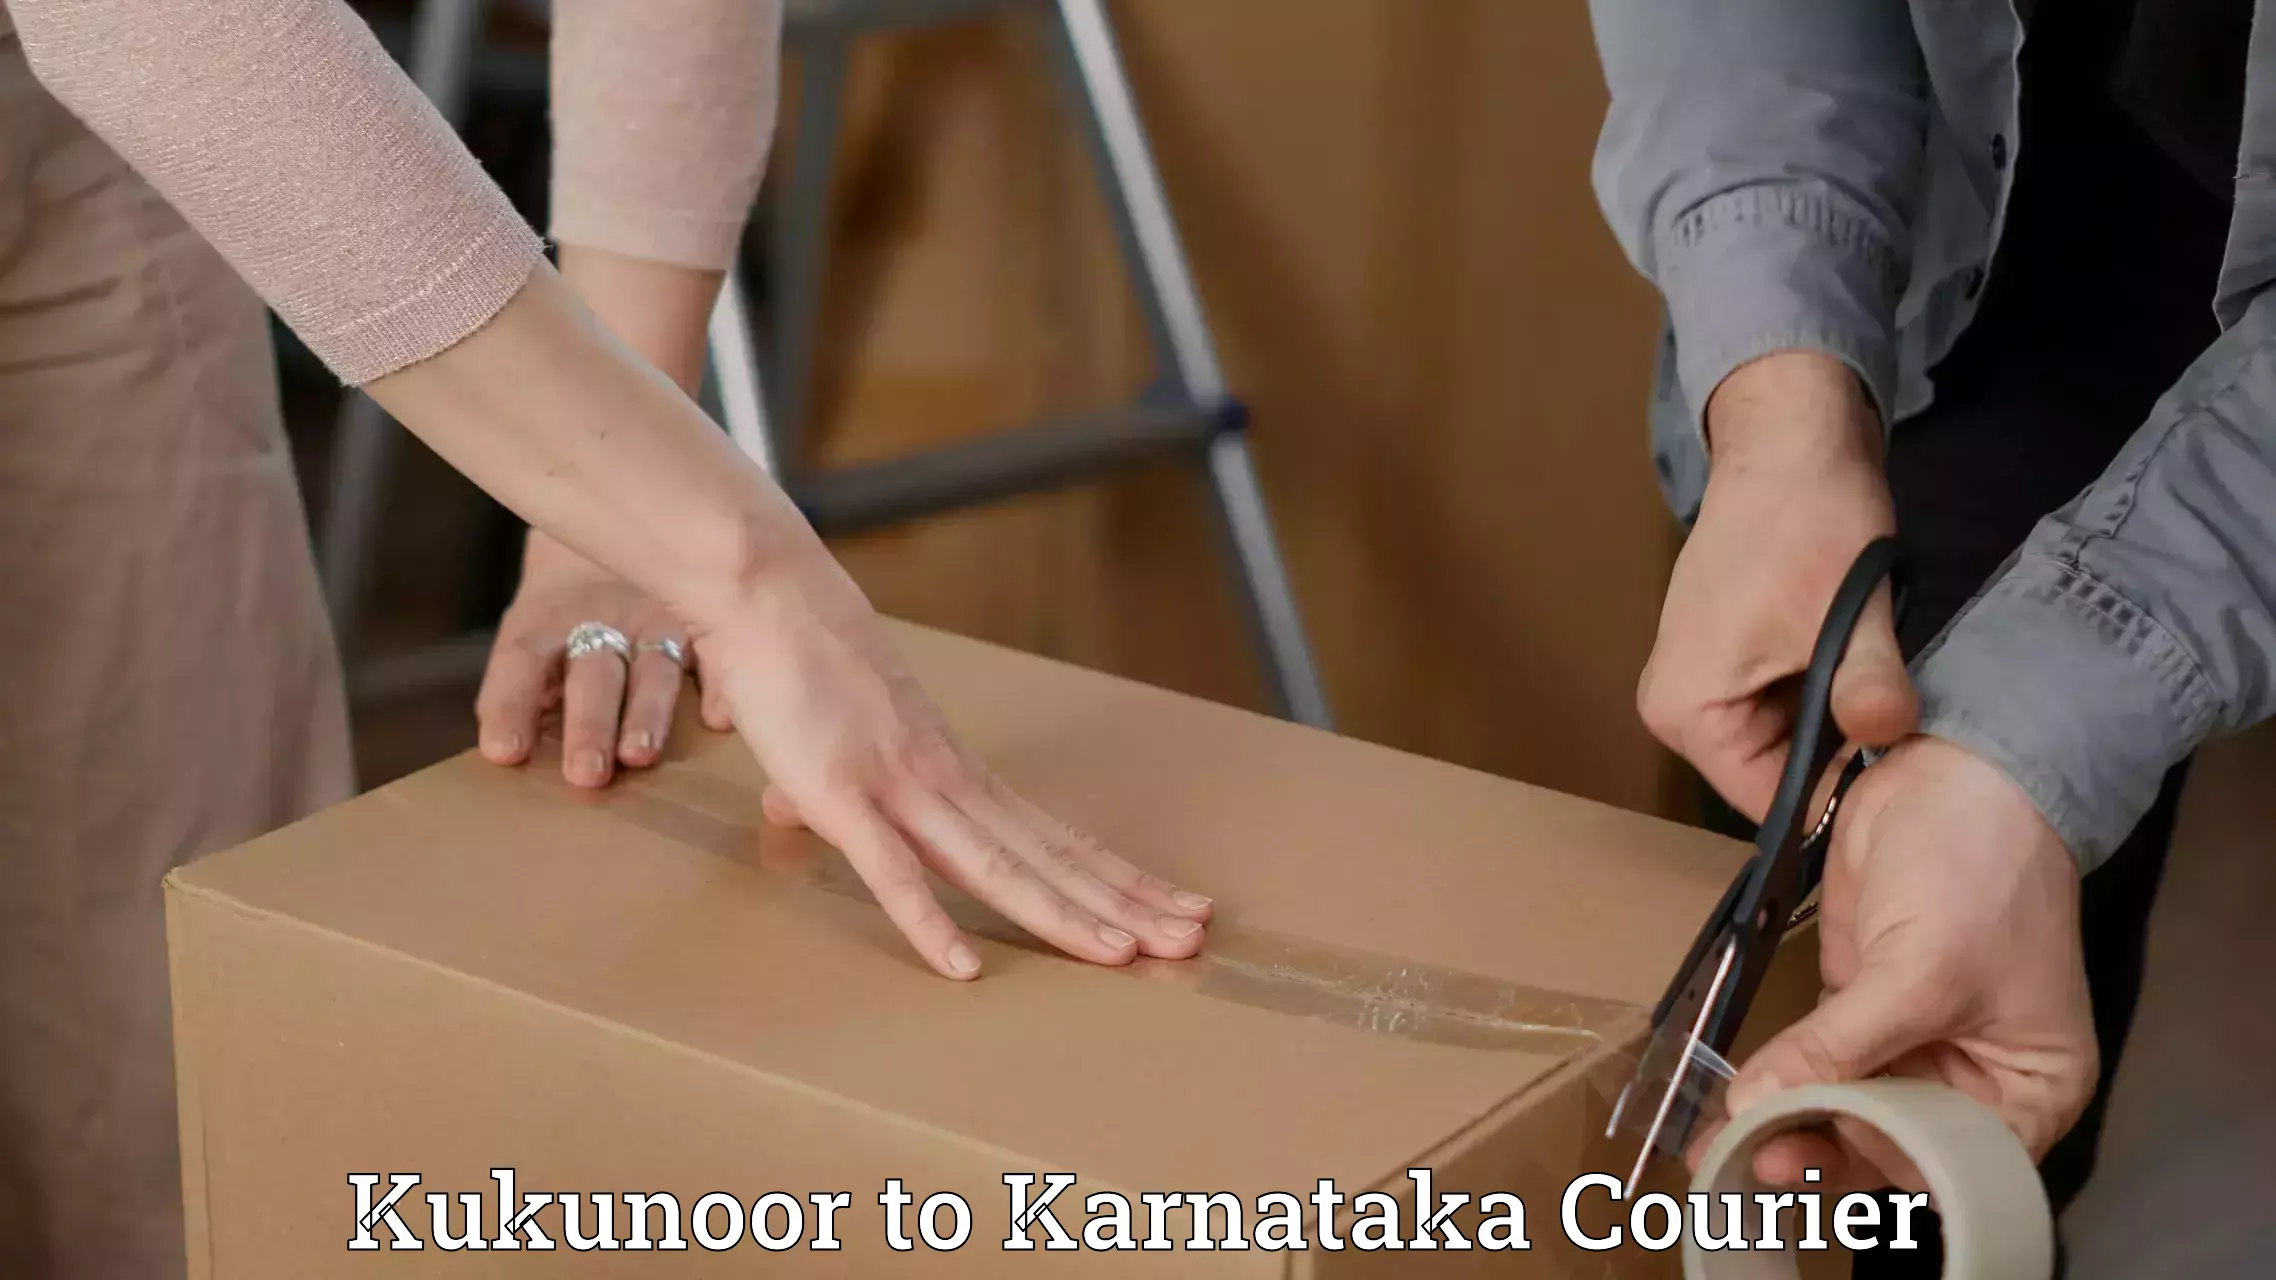 Customer-focused courier Kukunoor to Hangal